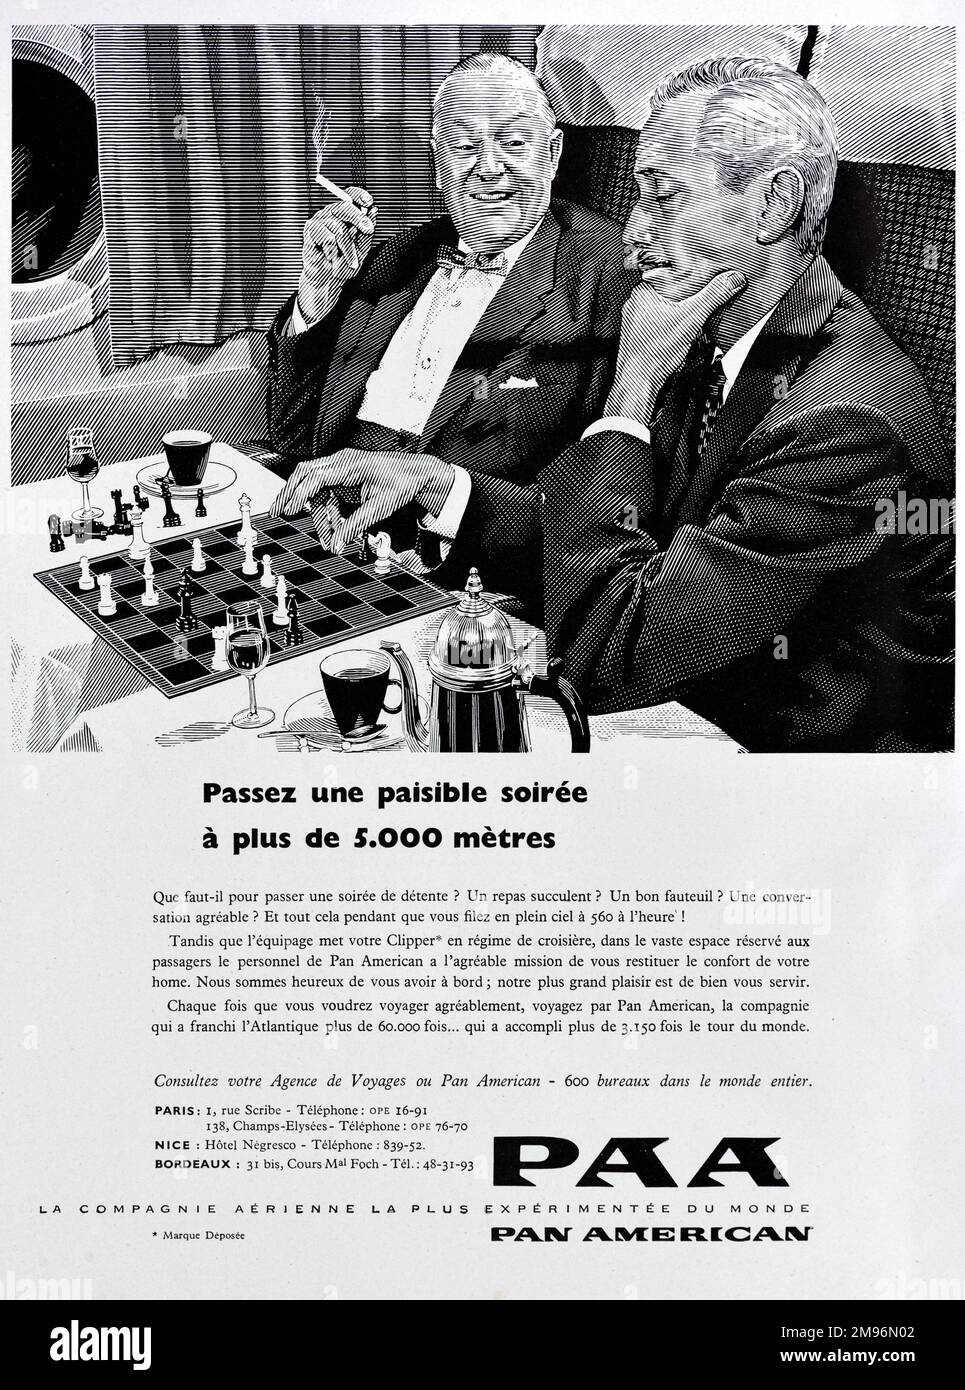 Vintage o antiguo anuncio, publicidad, publicidad o ilustración para Panam, Pan American Airlines o PAA 1957. Ilustrado con imágenes de pasajeros masculinos en cabina de aviones jugando un juego de ajedrez. Foto de stock